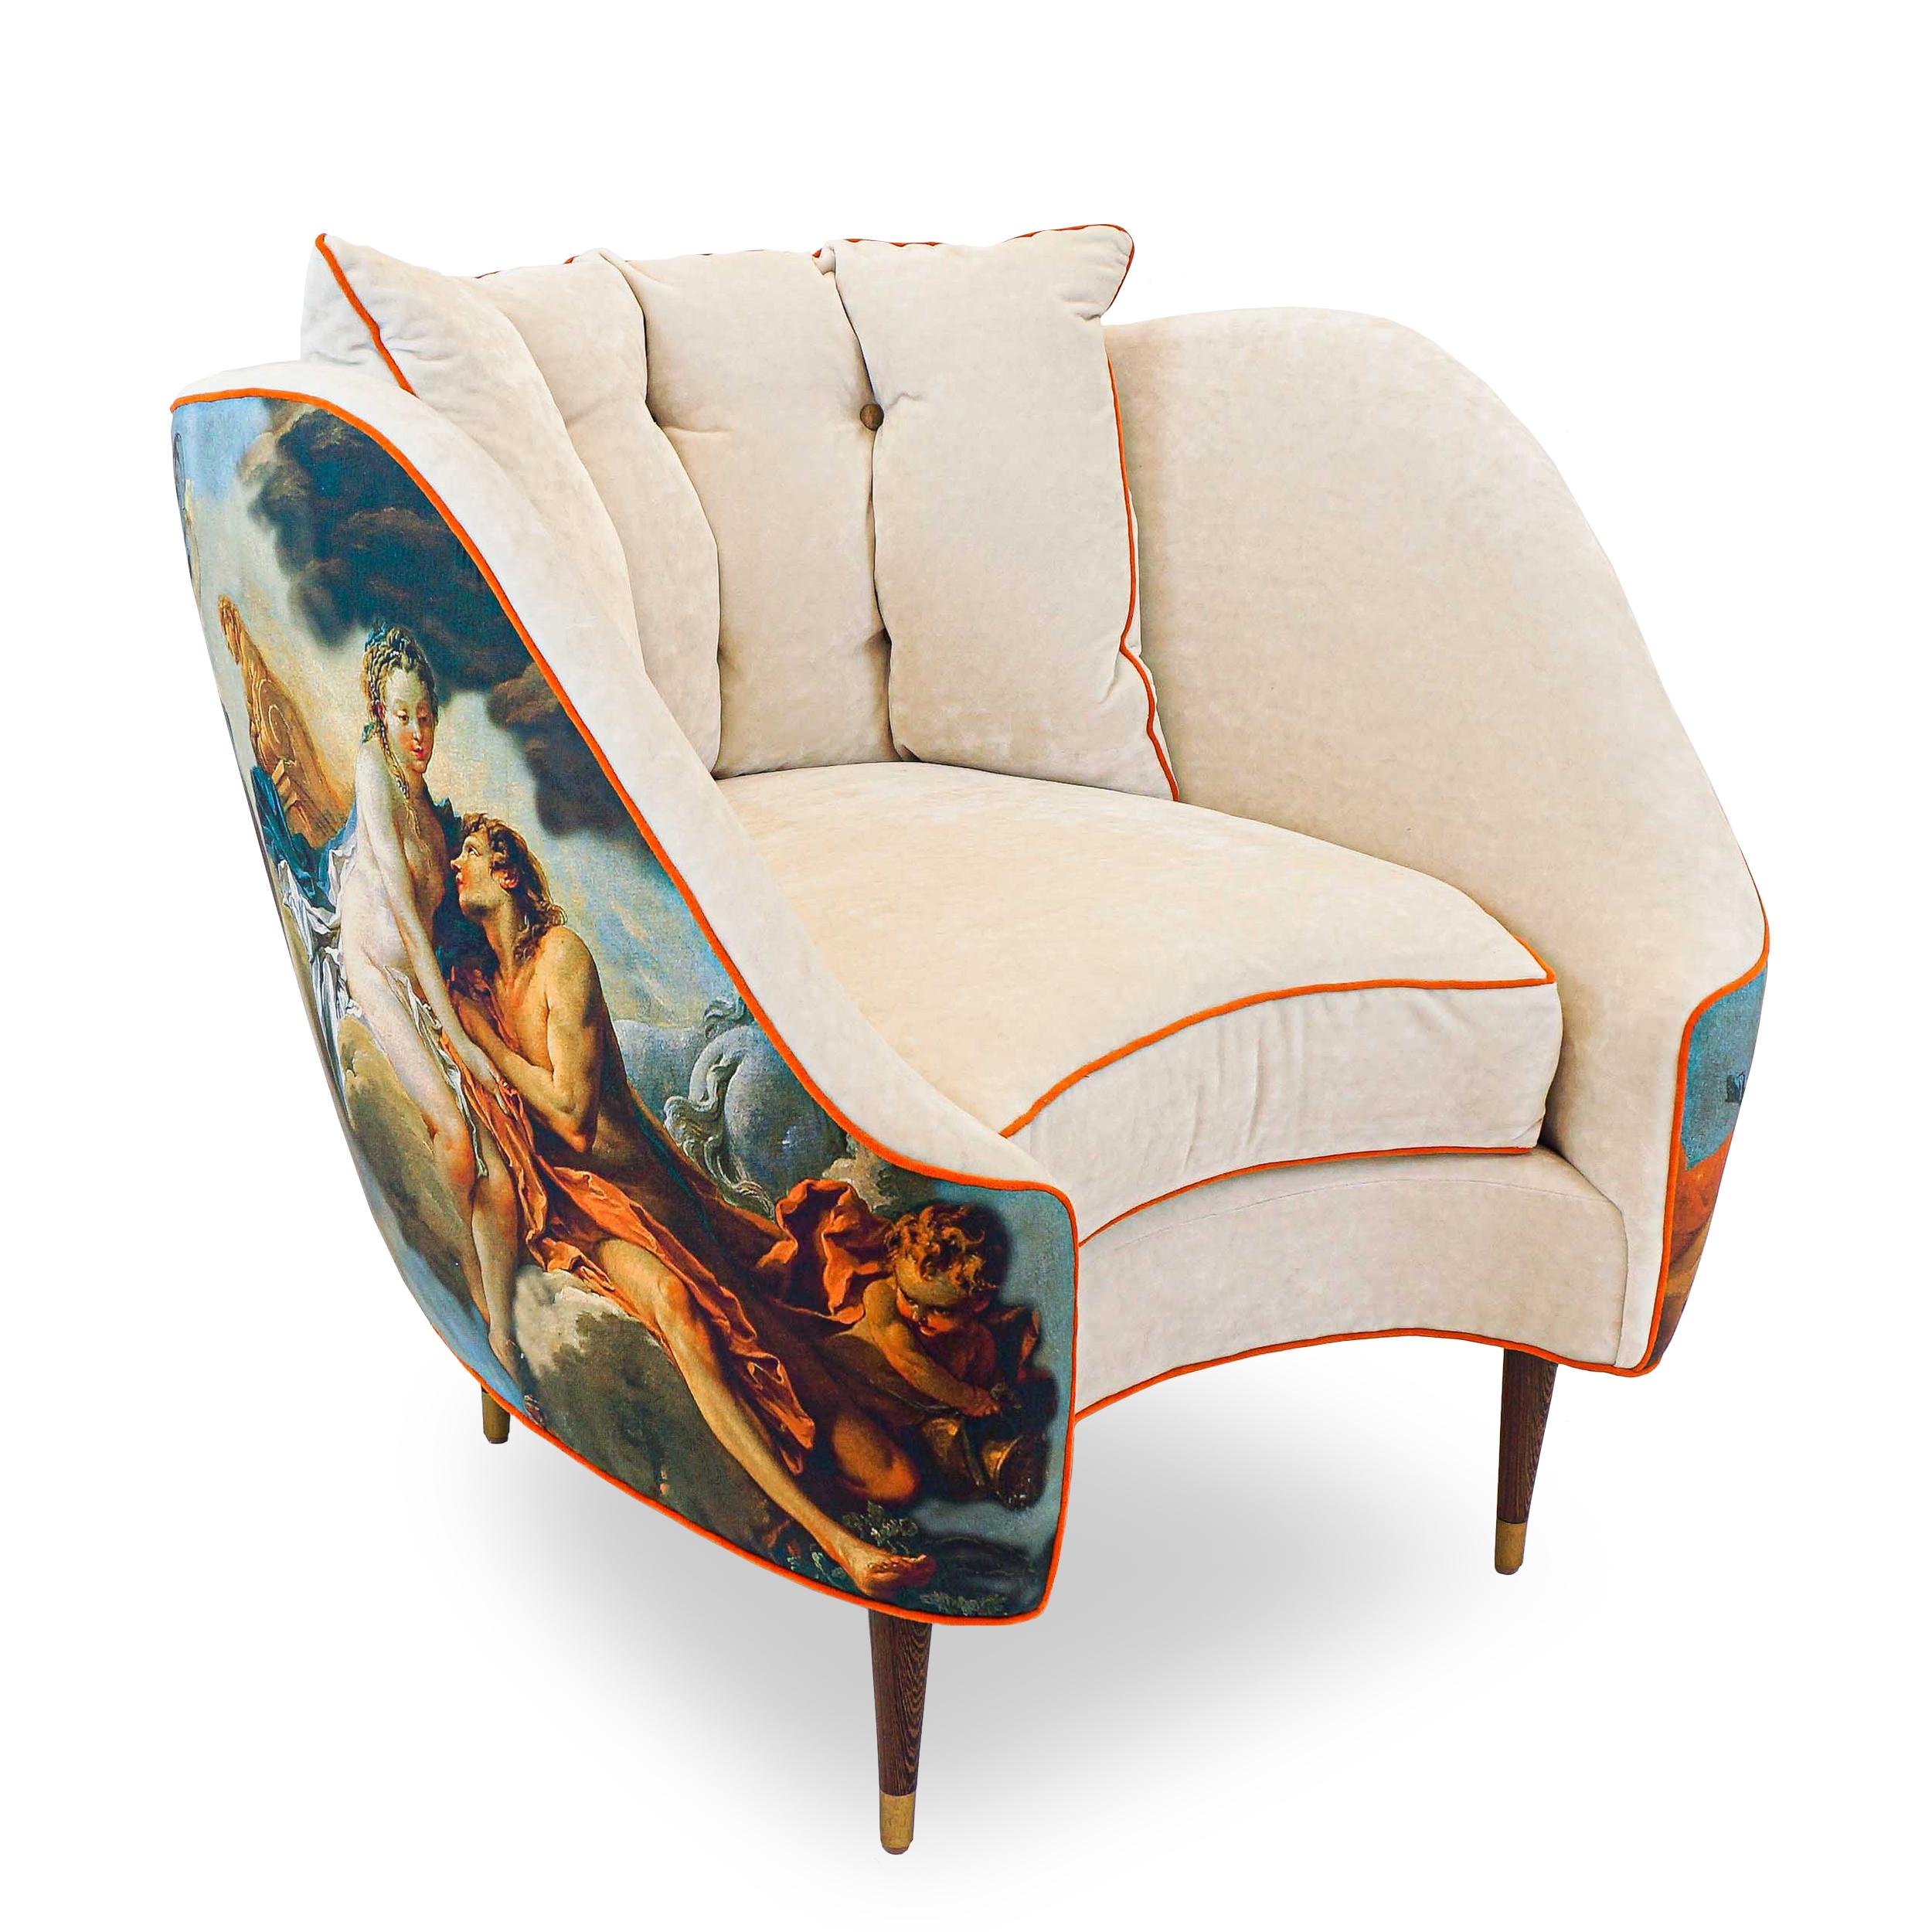 Cette chaise très originale de style seau illustre notre utilisation novatrice de la forme dans la conception de meubles et des arrangements de tissus perturbateurs. Recouvert d'une combinaison d'un tissu imprimé Pierre Frey dans une adaptation